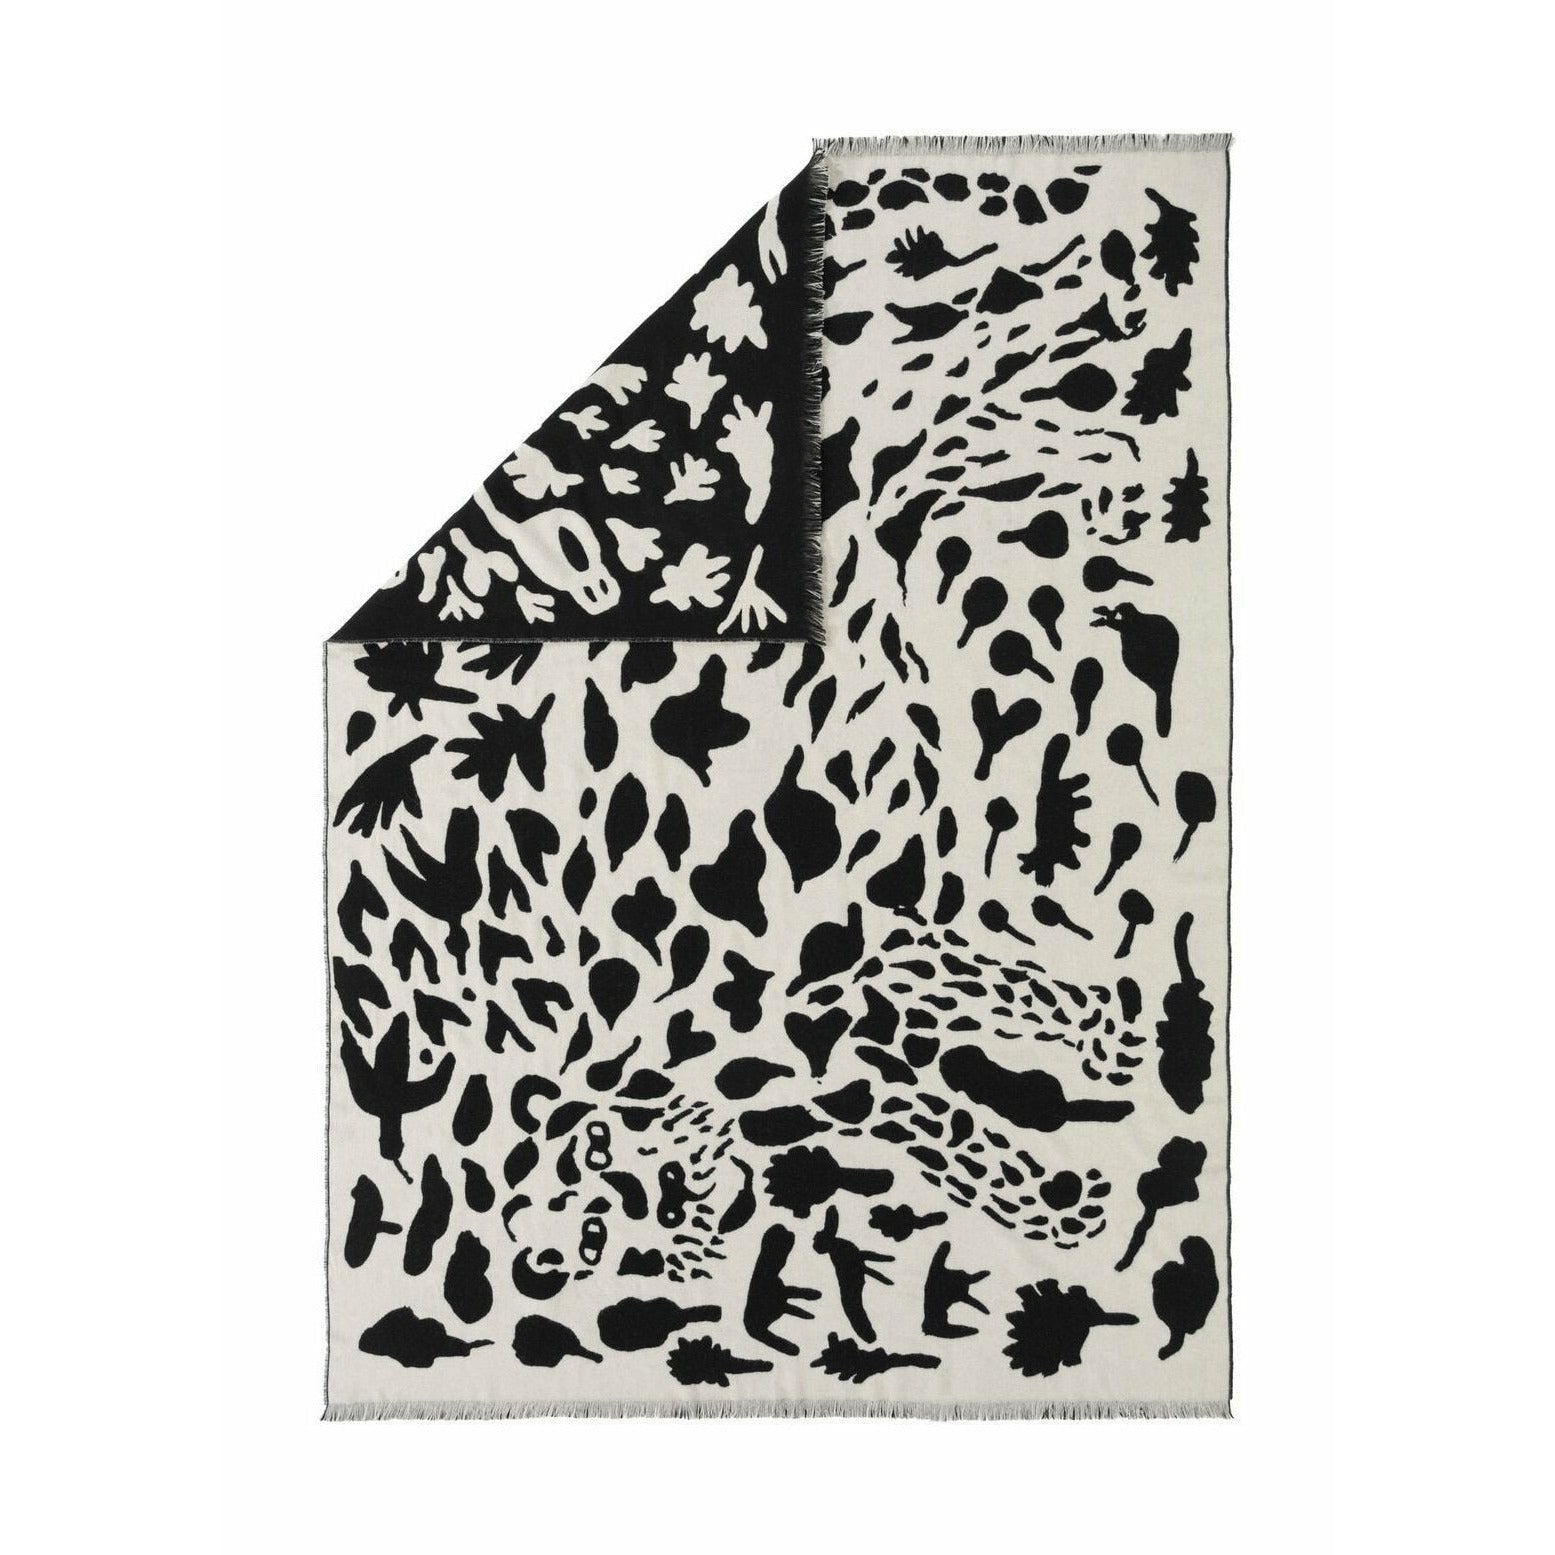 Iittala Oiva Toikka coperta ghepardo nero, 180x130cm